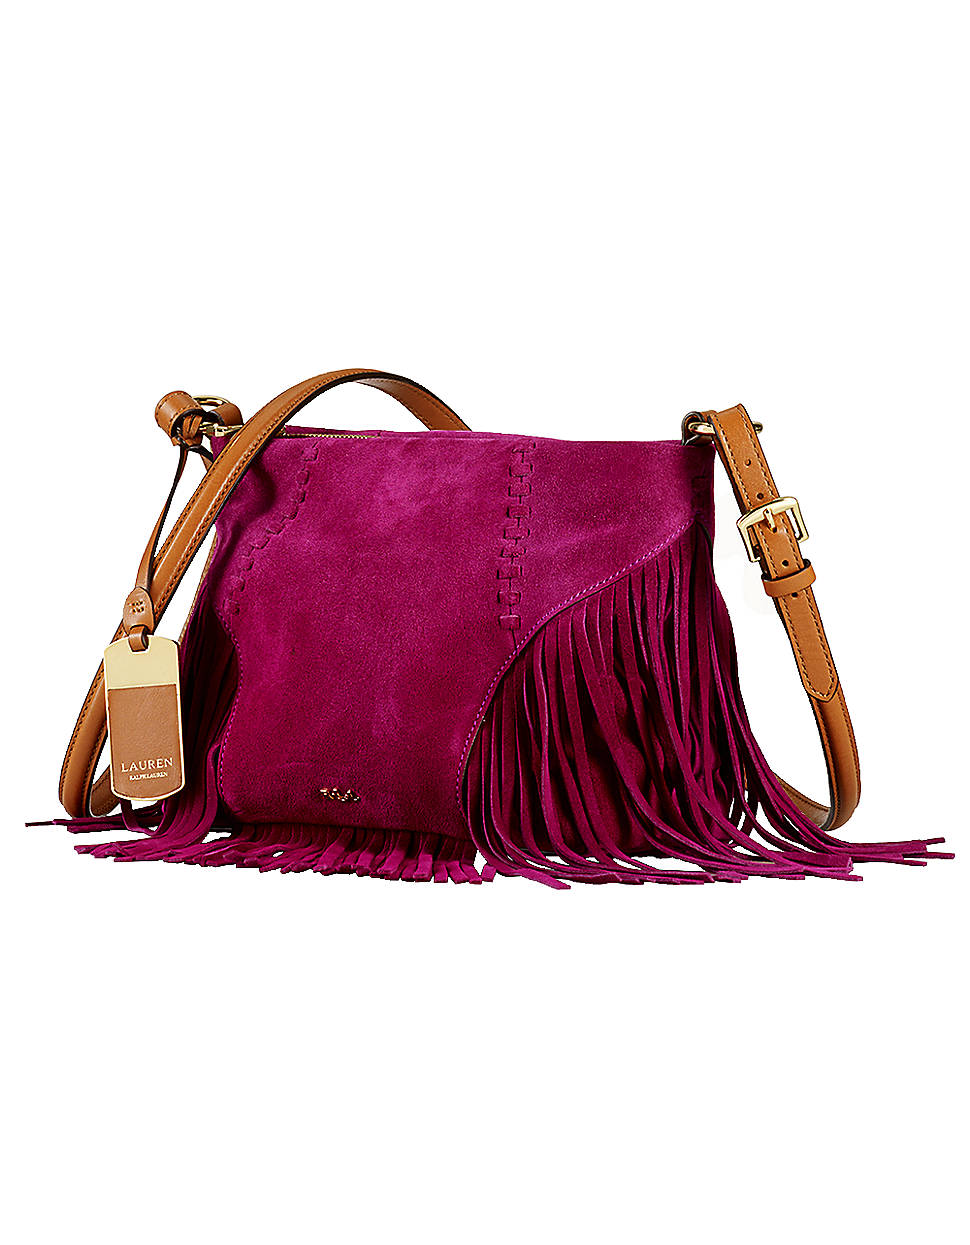 Lauren By Ralph Lauren Suede Fringe Crossbody Bag in Pink (gold)